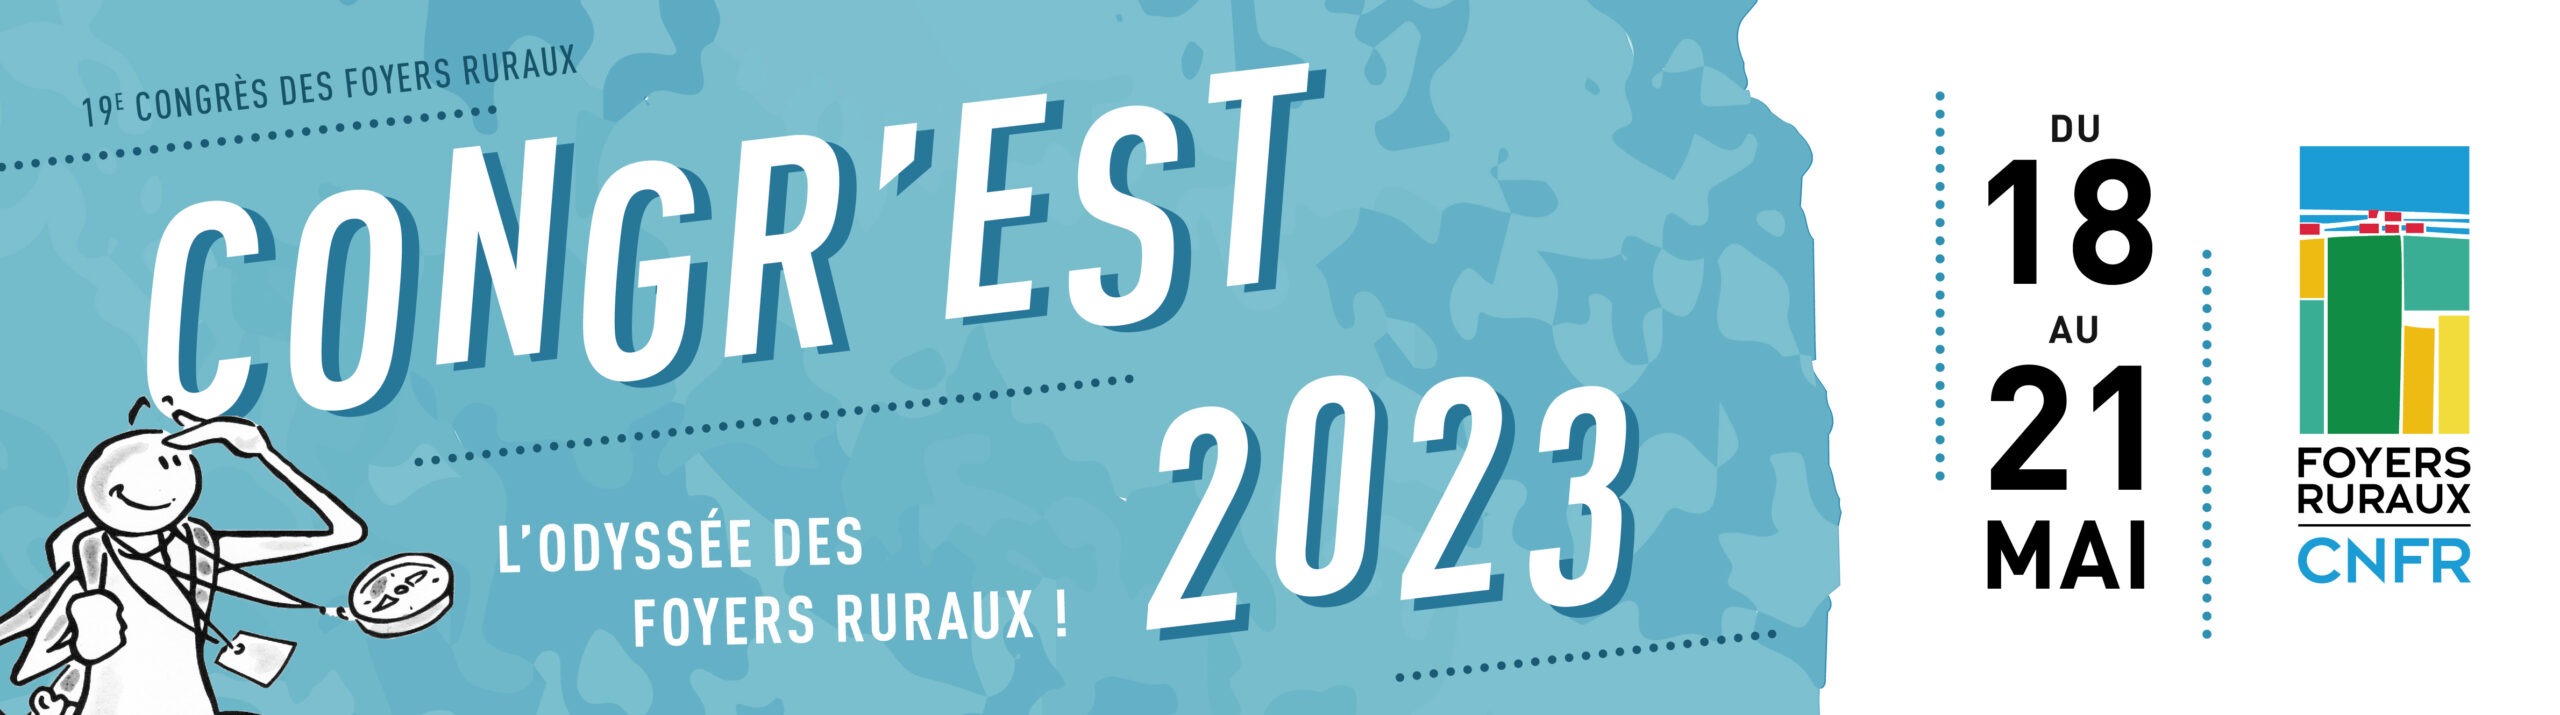 Congr'Est 2023 - Rendez-vous du 18 au 21 mai à St-Dié-des-Vosges